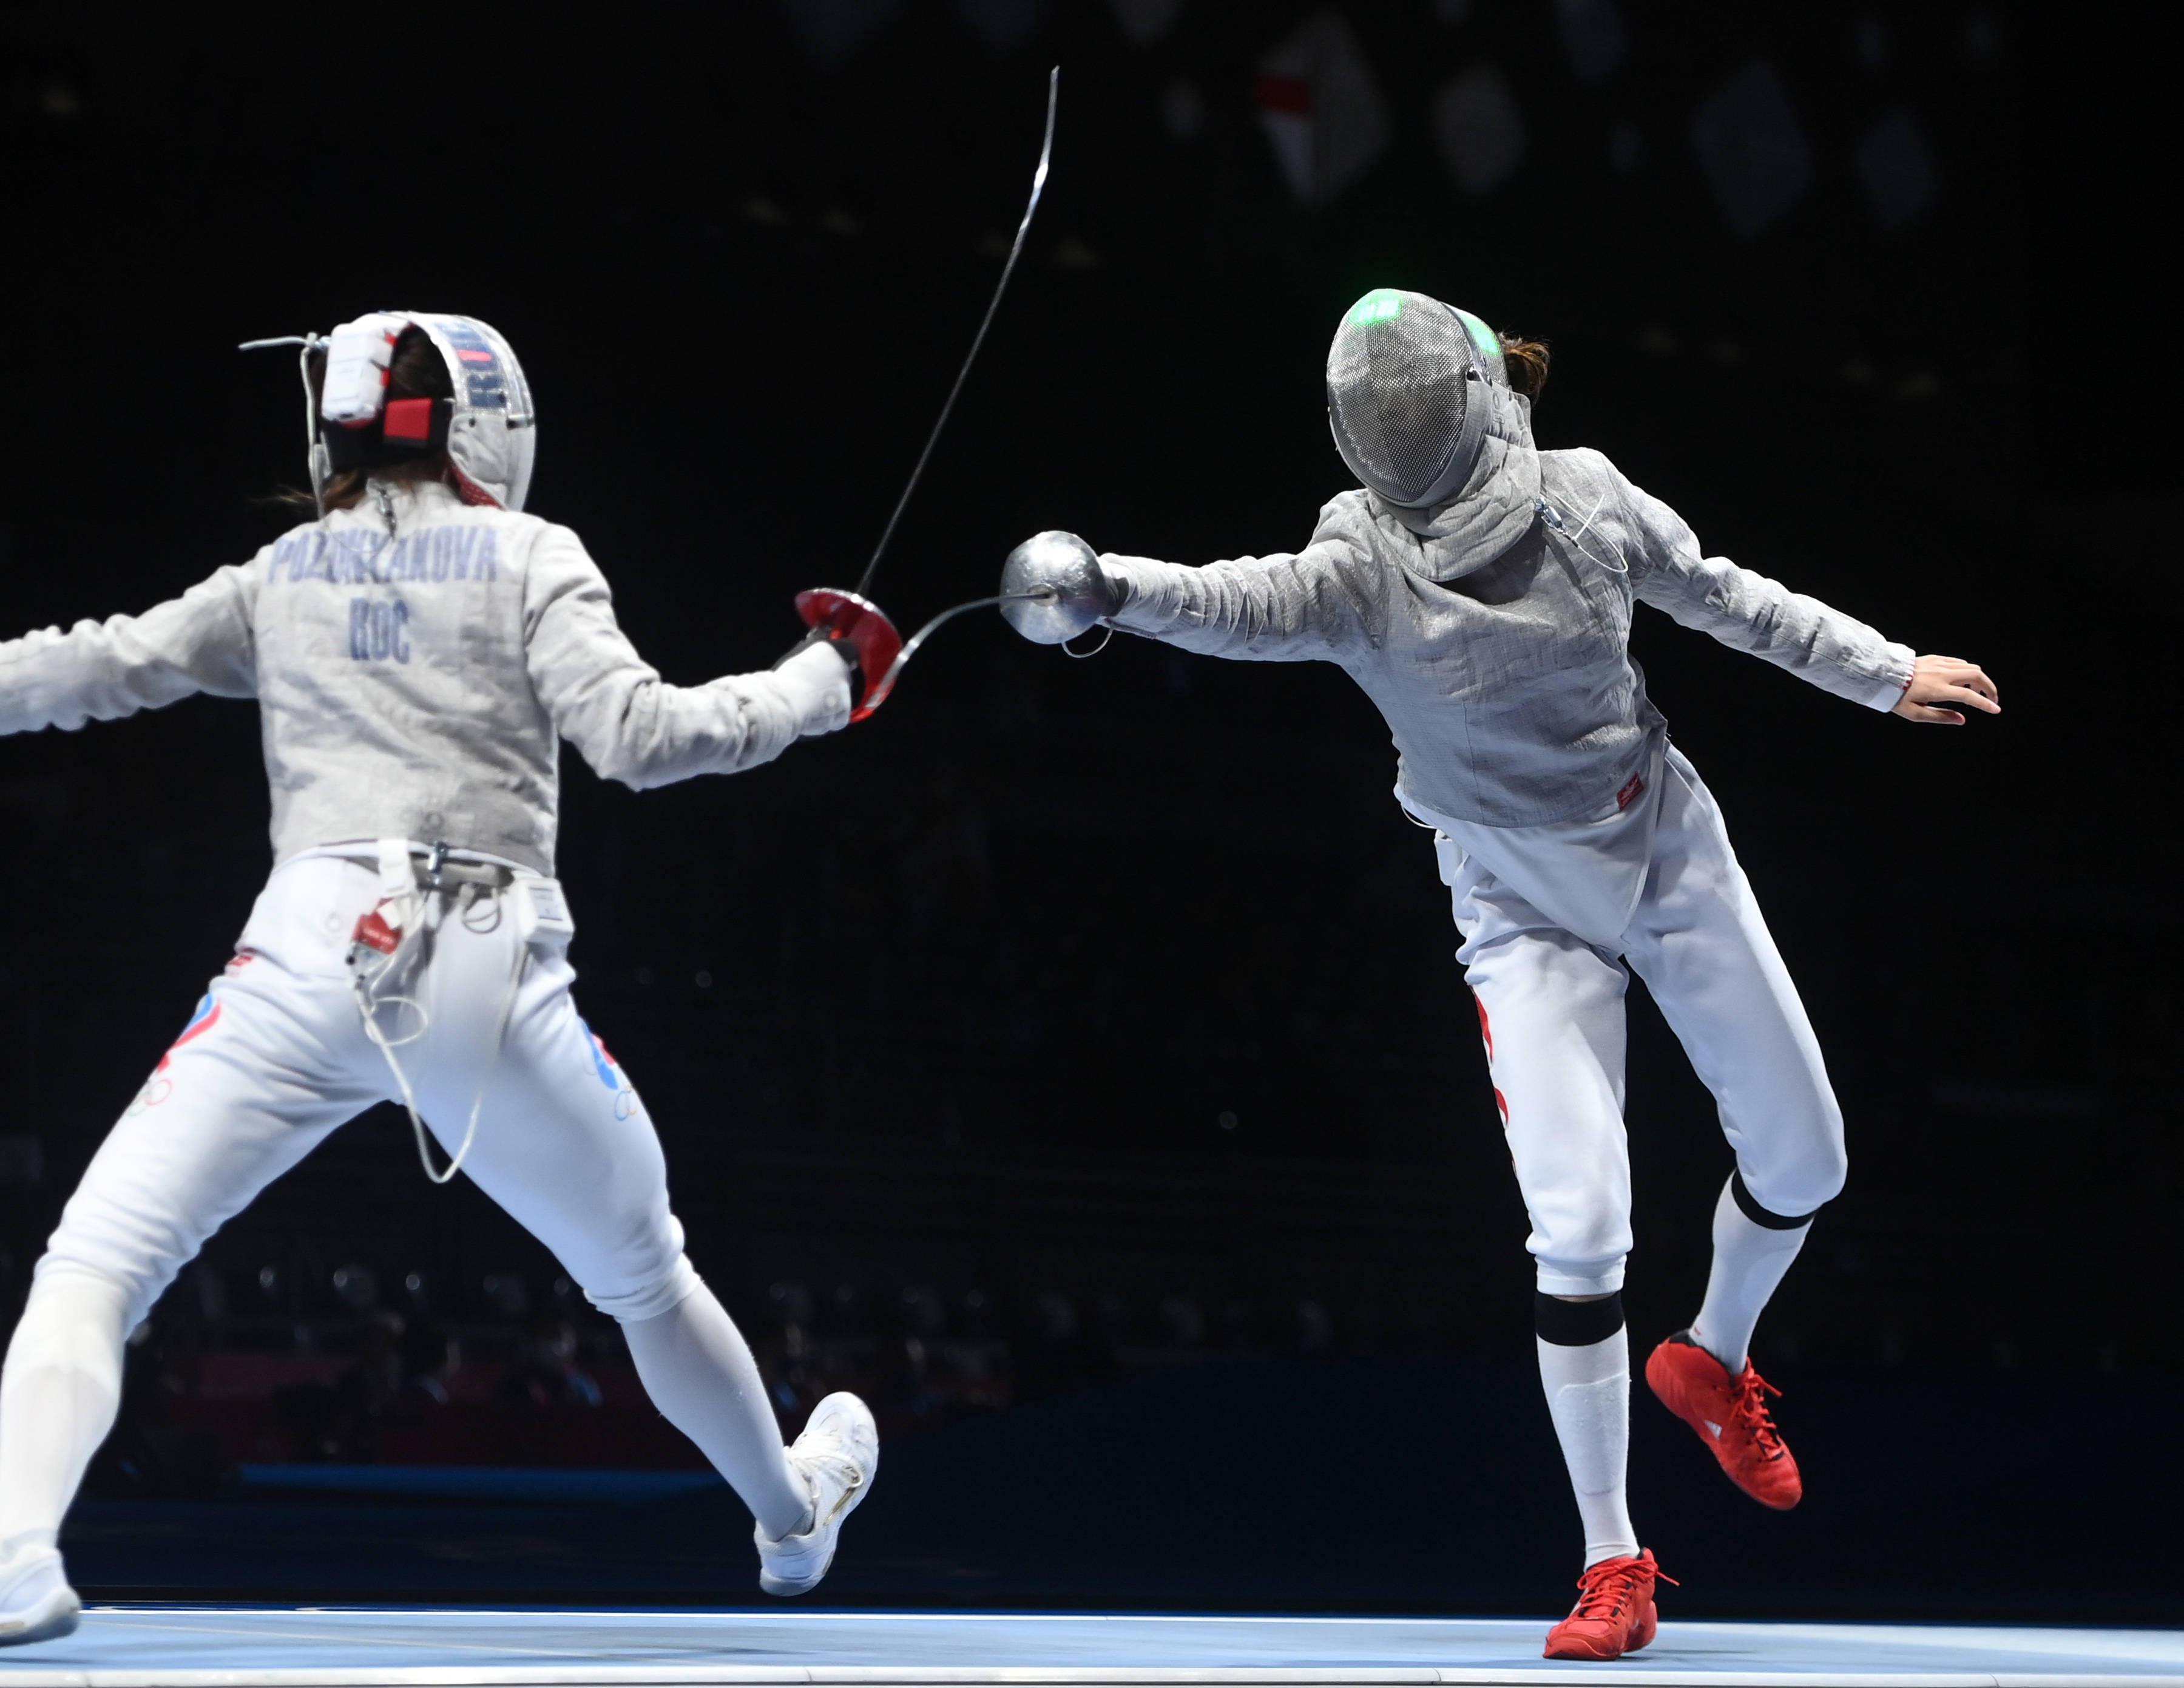 奥运会比赛照片击剑图片